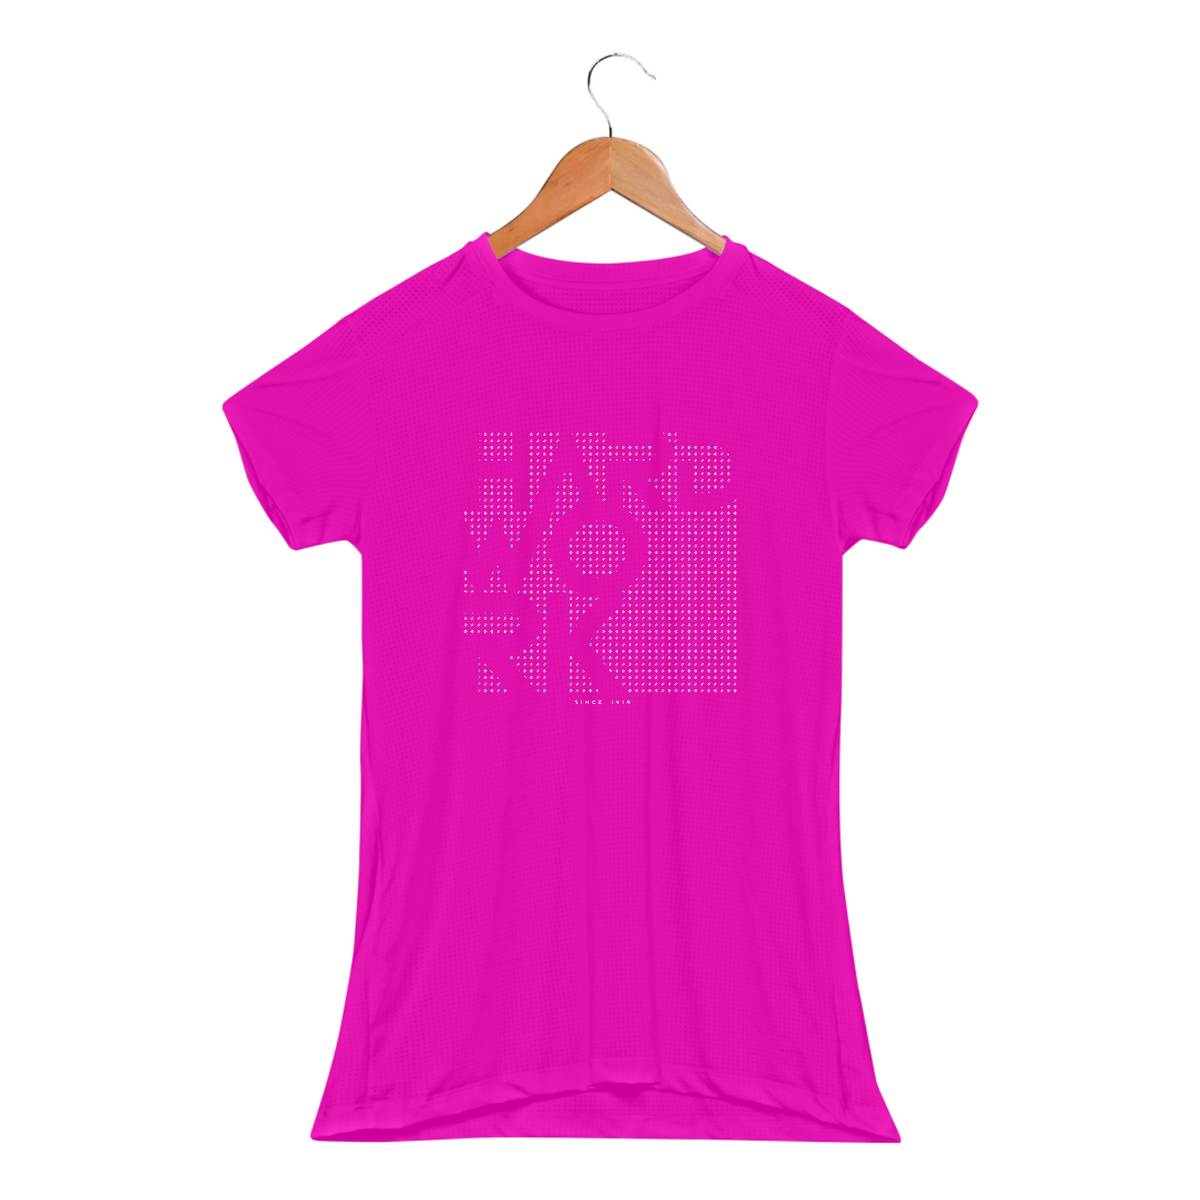 Nome do produto: Camisa baby long feminina Dry Fit com proteção UV - JITSU - Estampa Hardwork